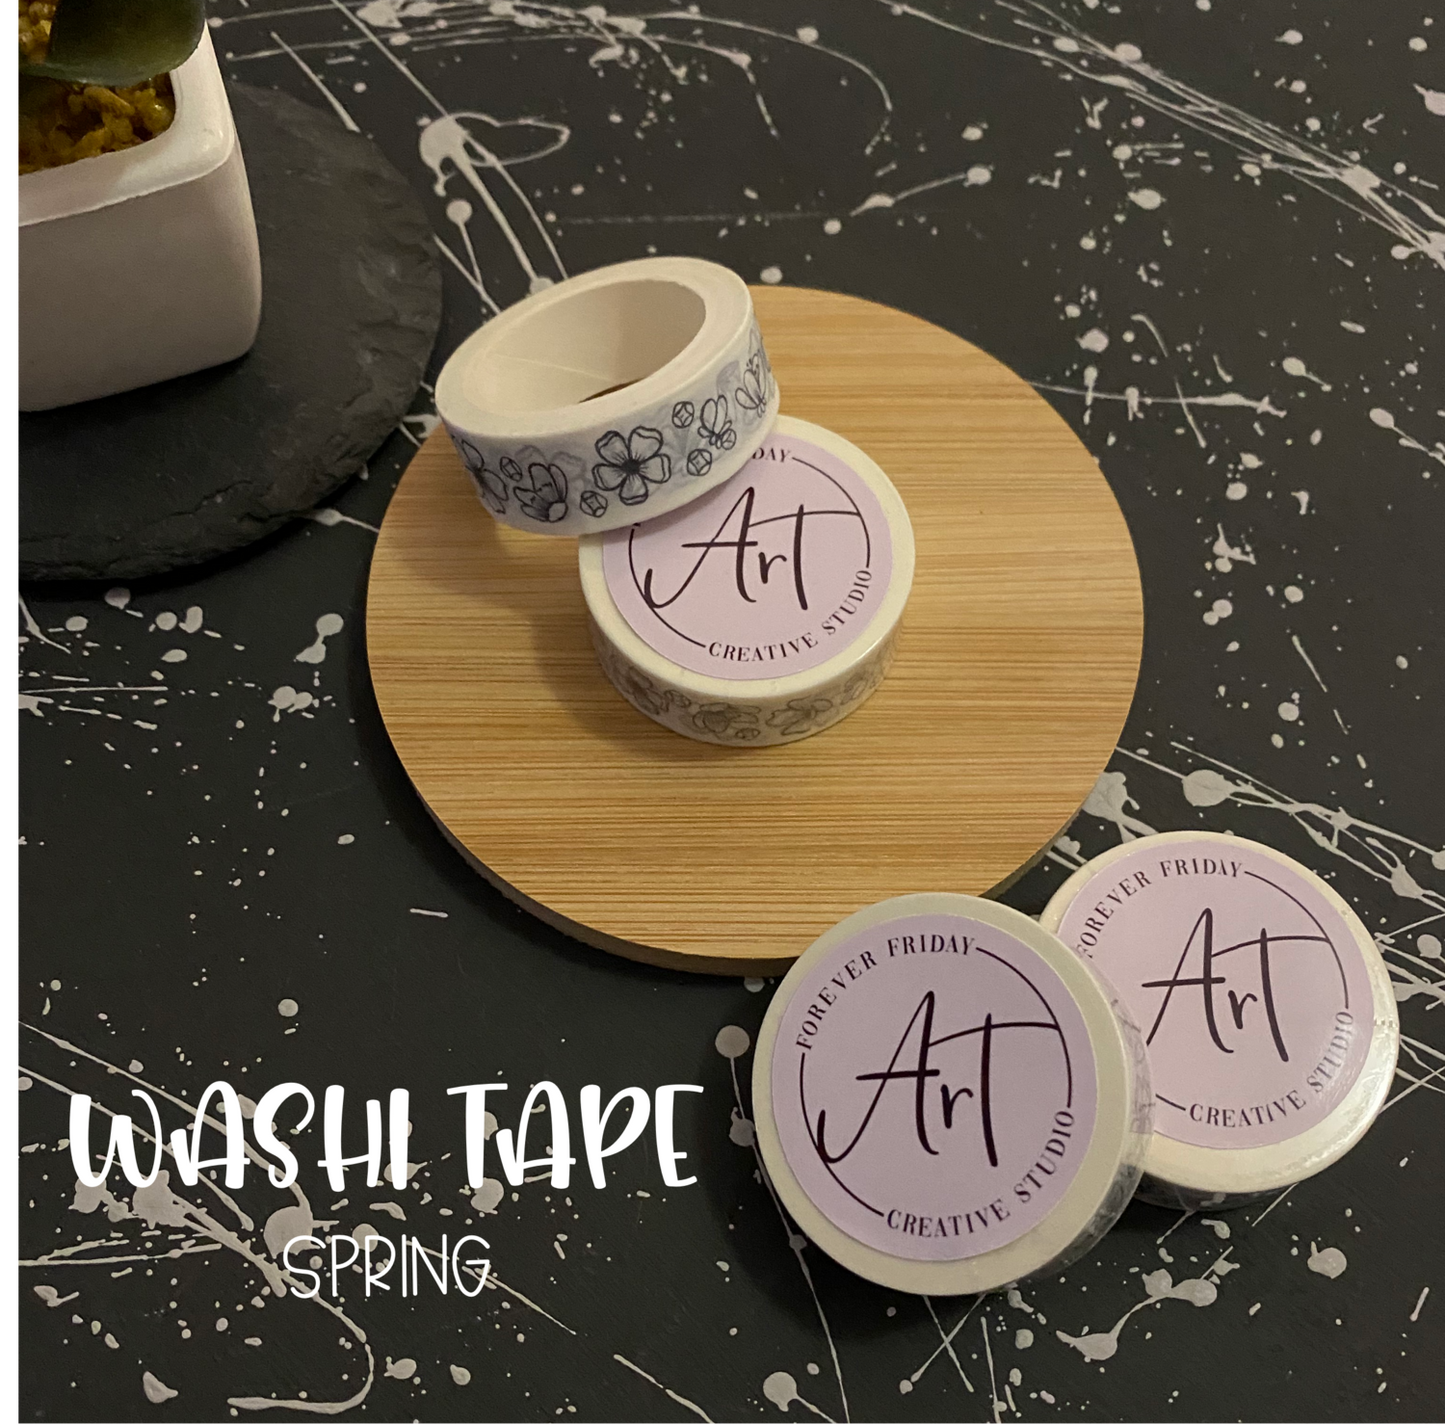 Spring Washi Tape